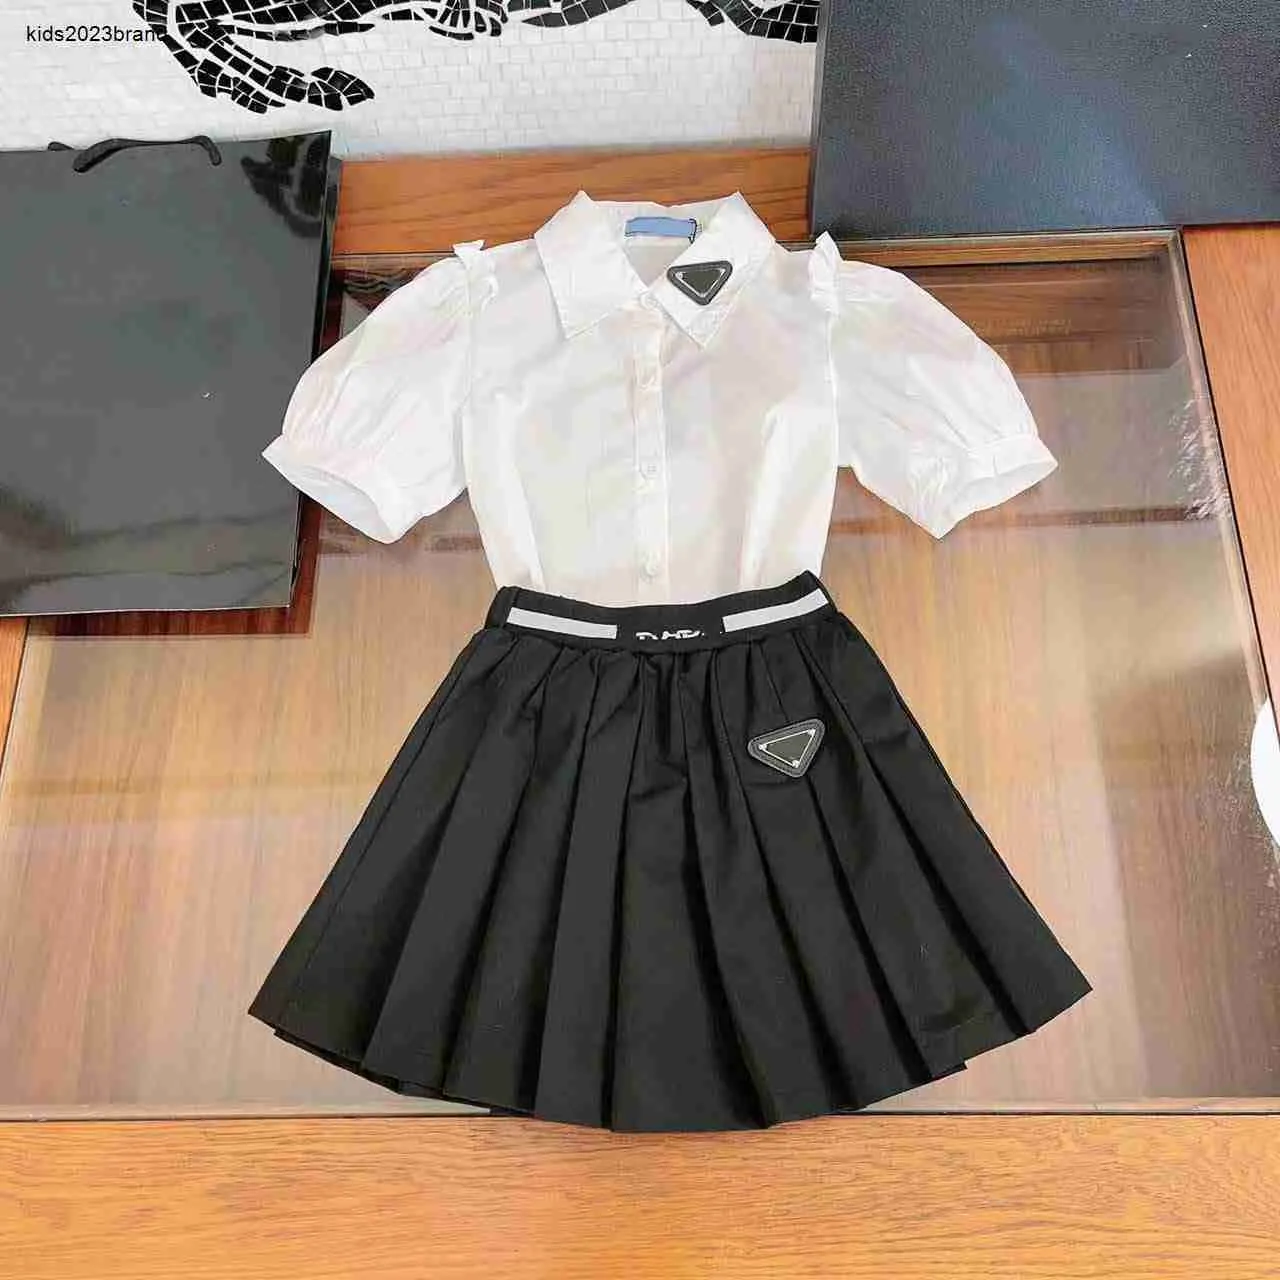 فستان الأطفال الجديد مجموعات مسارات الأطفال ملابس طفلة الحجم 110-160 قميص قصير الأكمام وتنورة مطوية 24FEB20